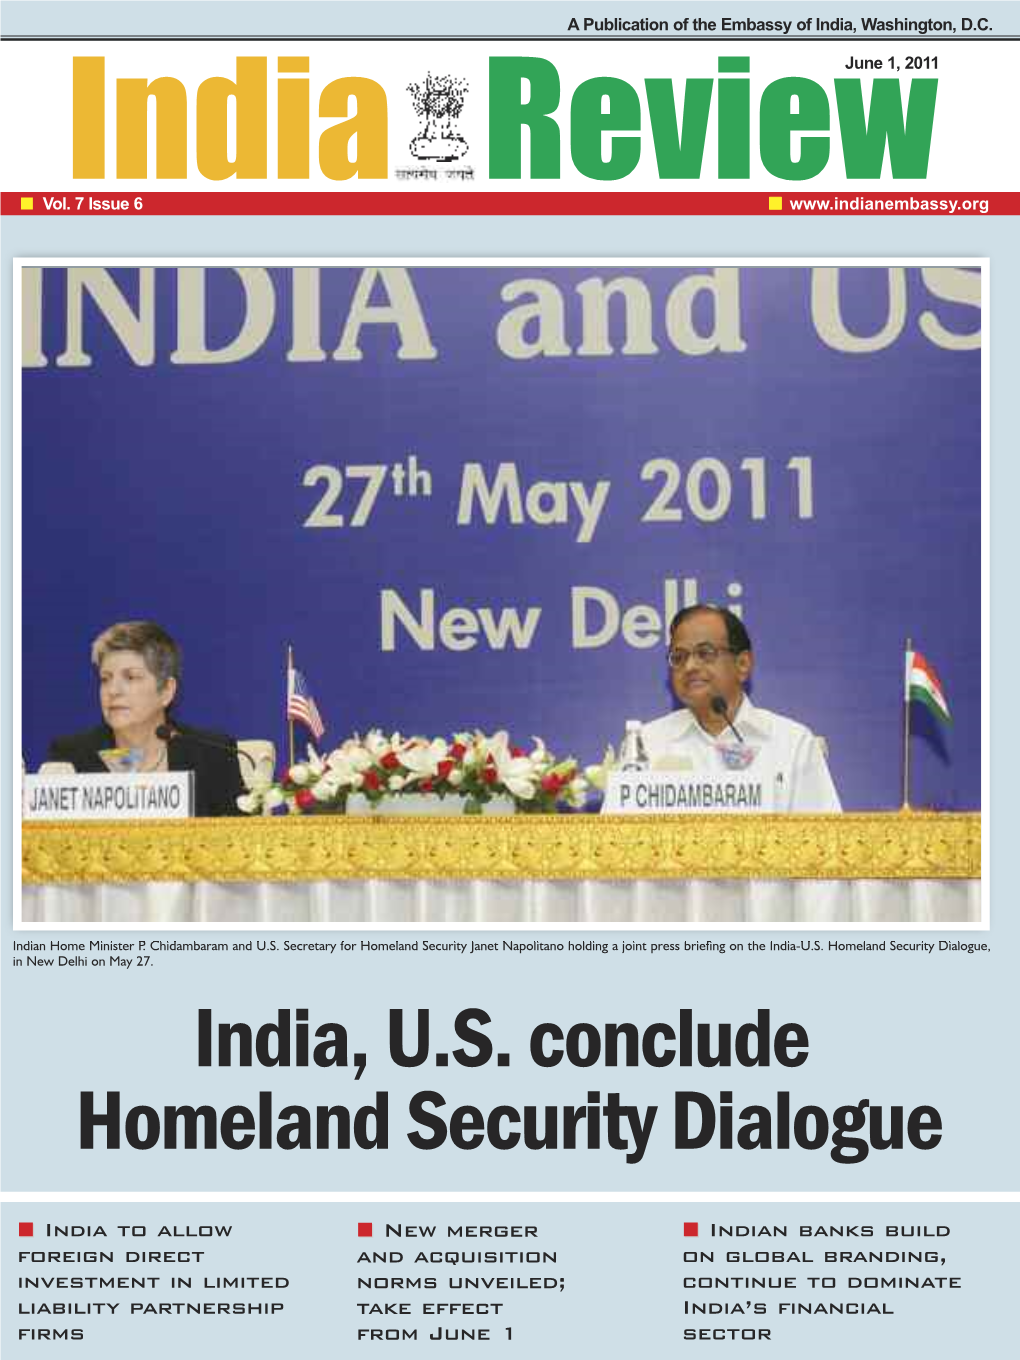 India, U.S. Conclude Homeland Security Dialogue